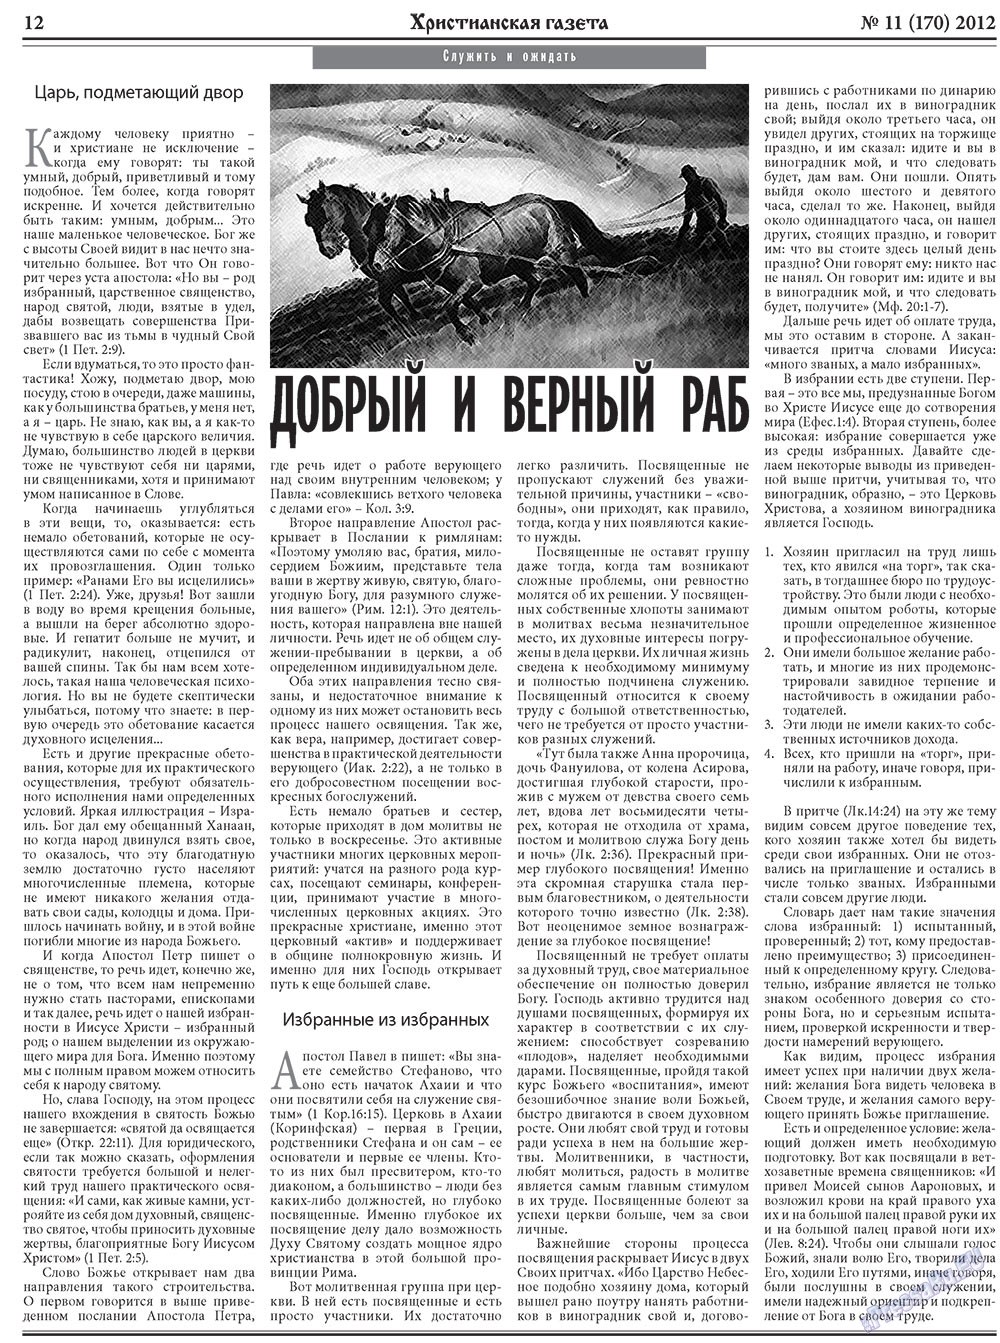 Христианская газета, газета. 2012 №11 стр.12